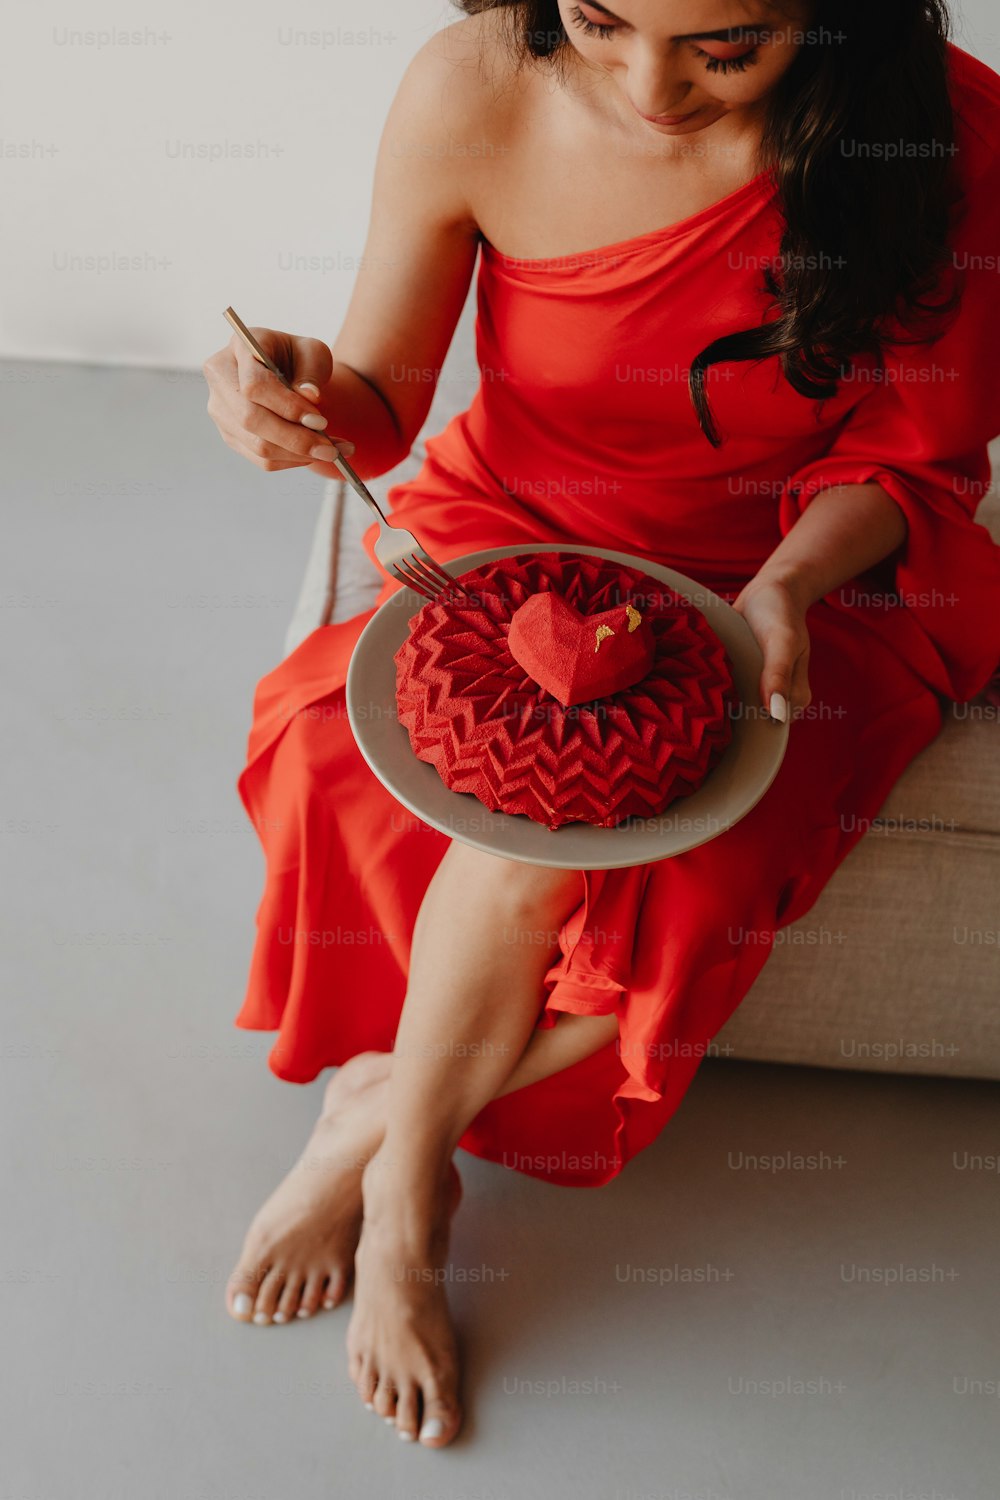 ハート型のケーキを持つ赤いドレスを着�た女性